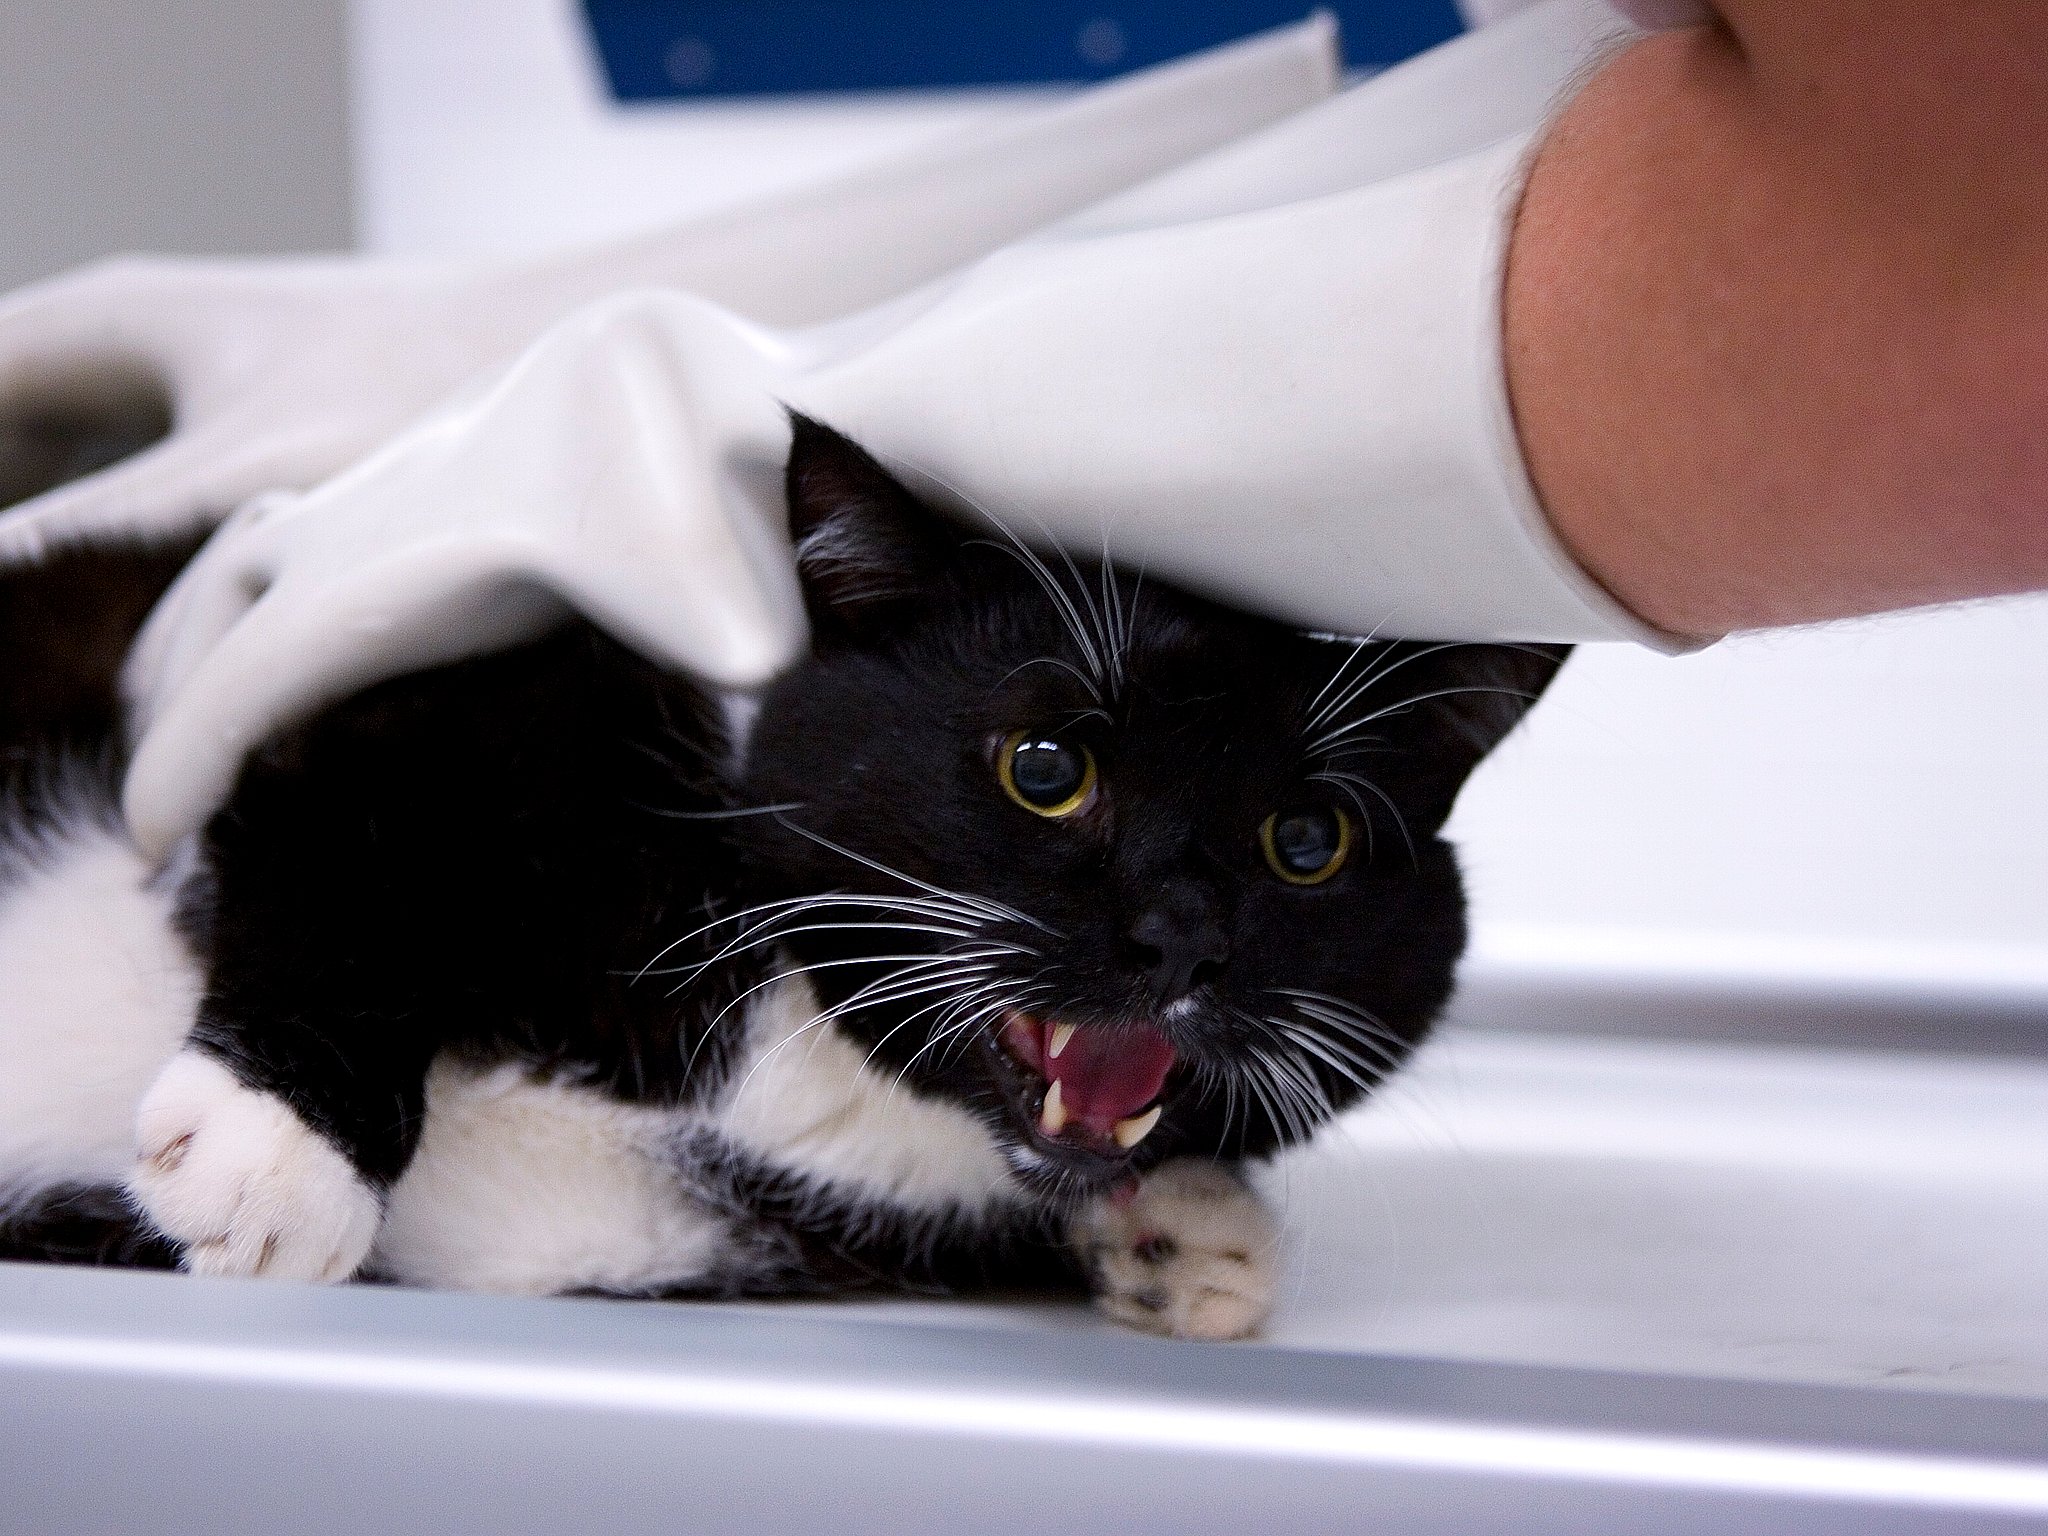 billeder: Katte indfangningen 'saboteres' | 2 Kosmopol